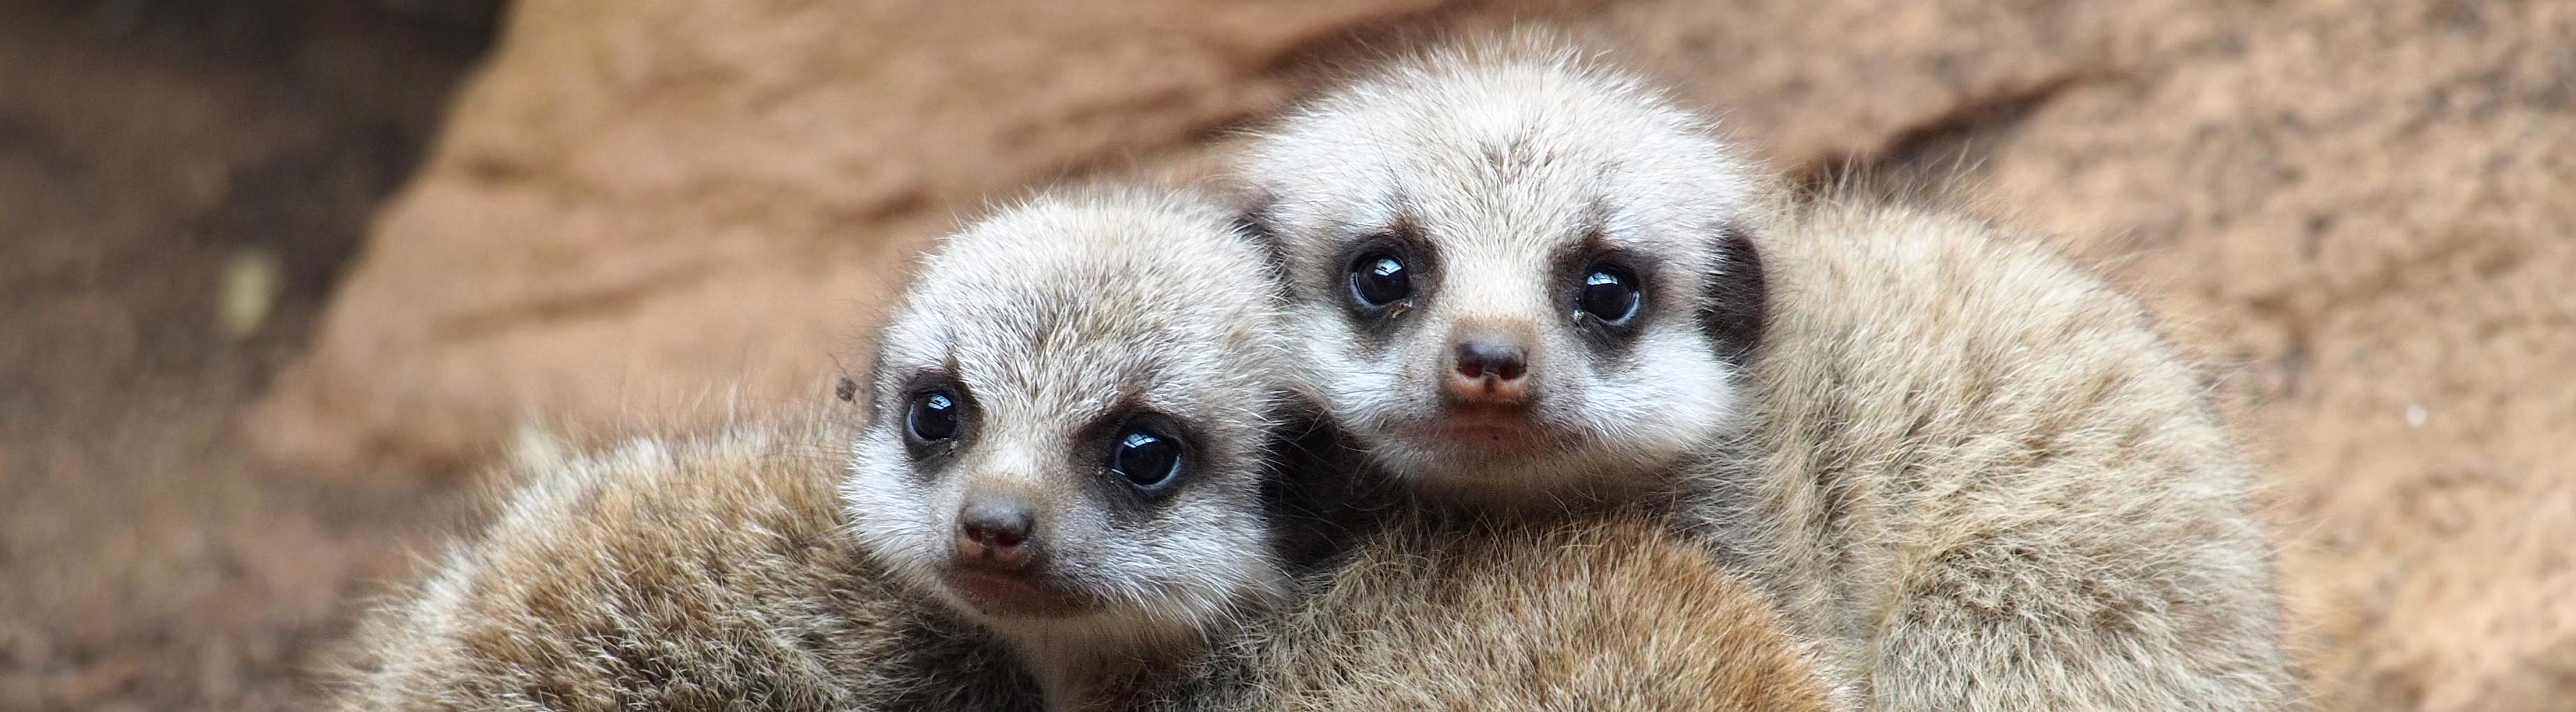 Baby meerkats | Wikipedia